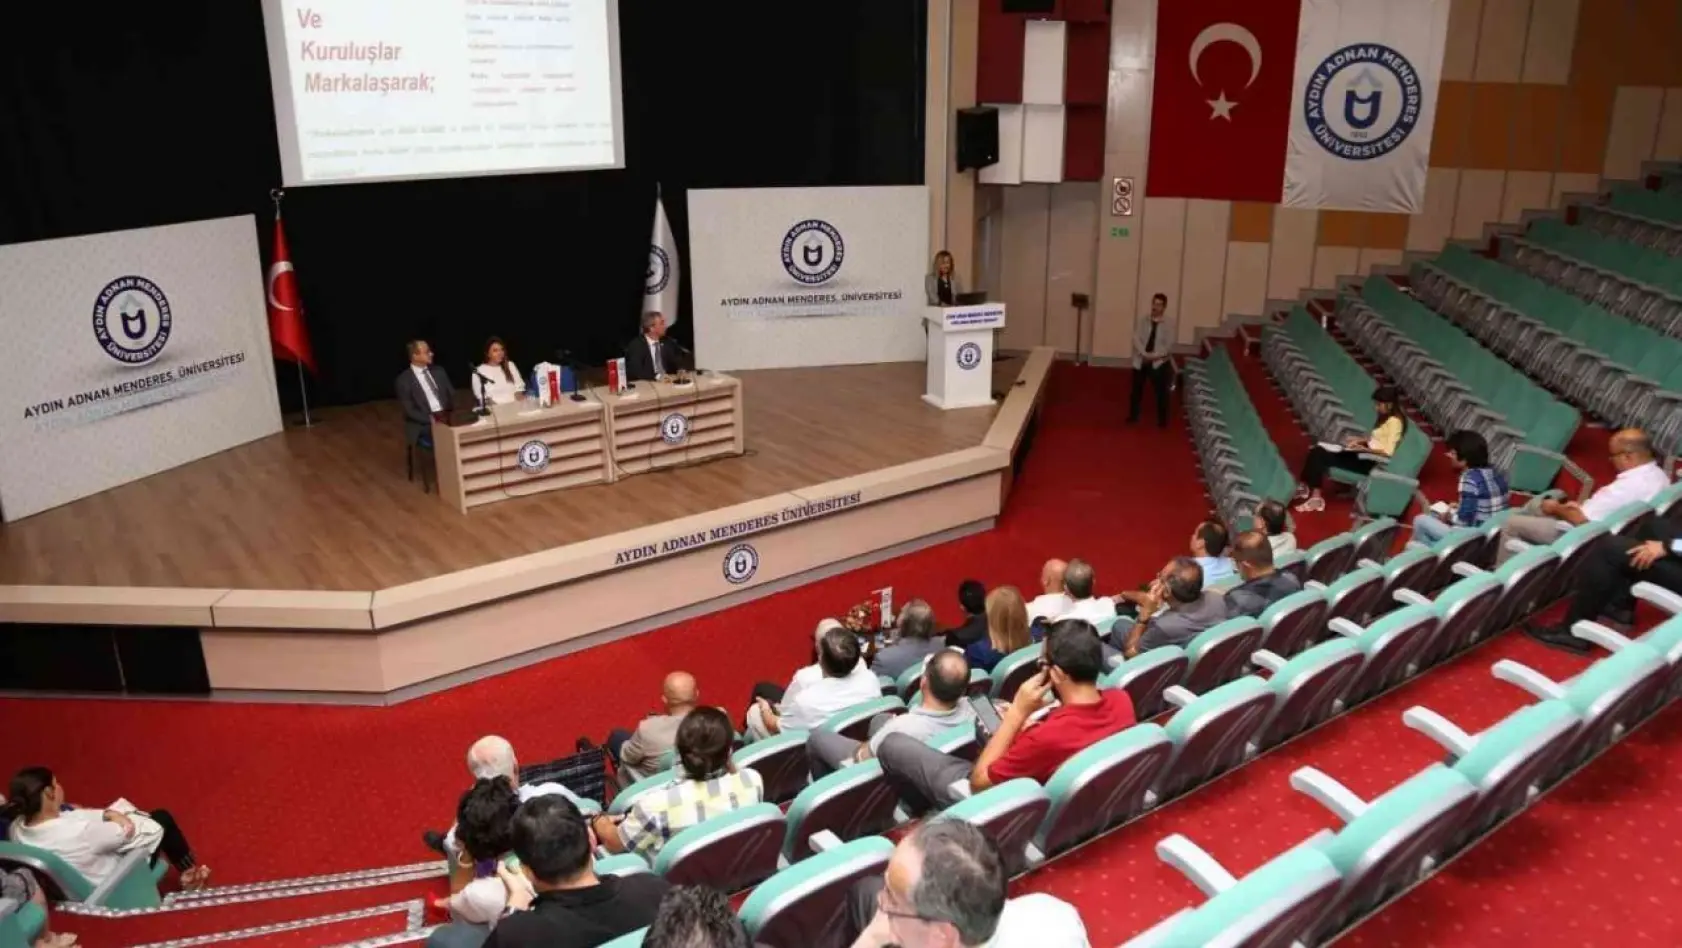 ADÜ'de 'Adnan Menderes Farkındalığı Paneli' gerçekleştirildi